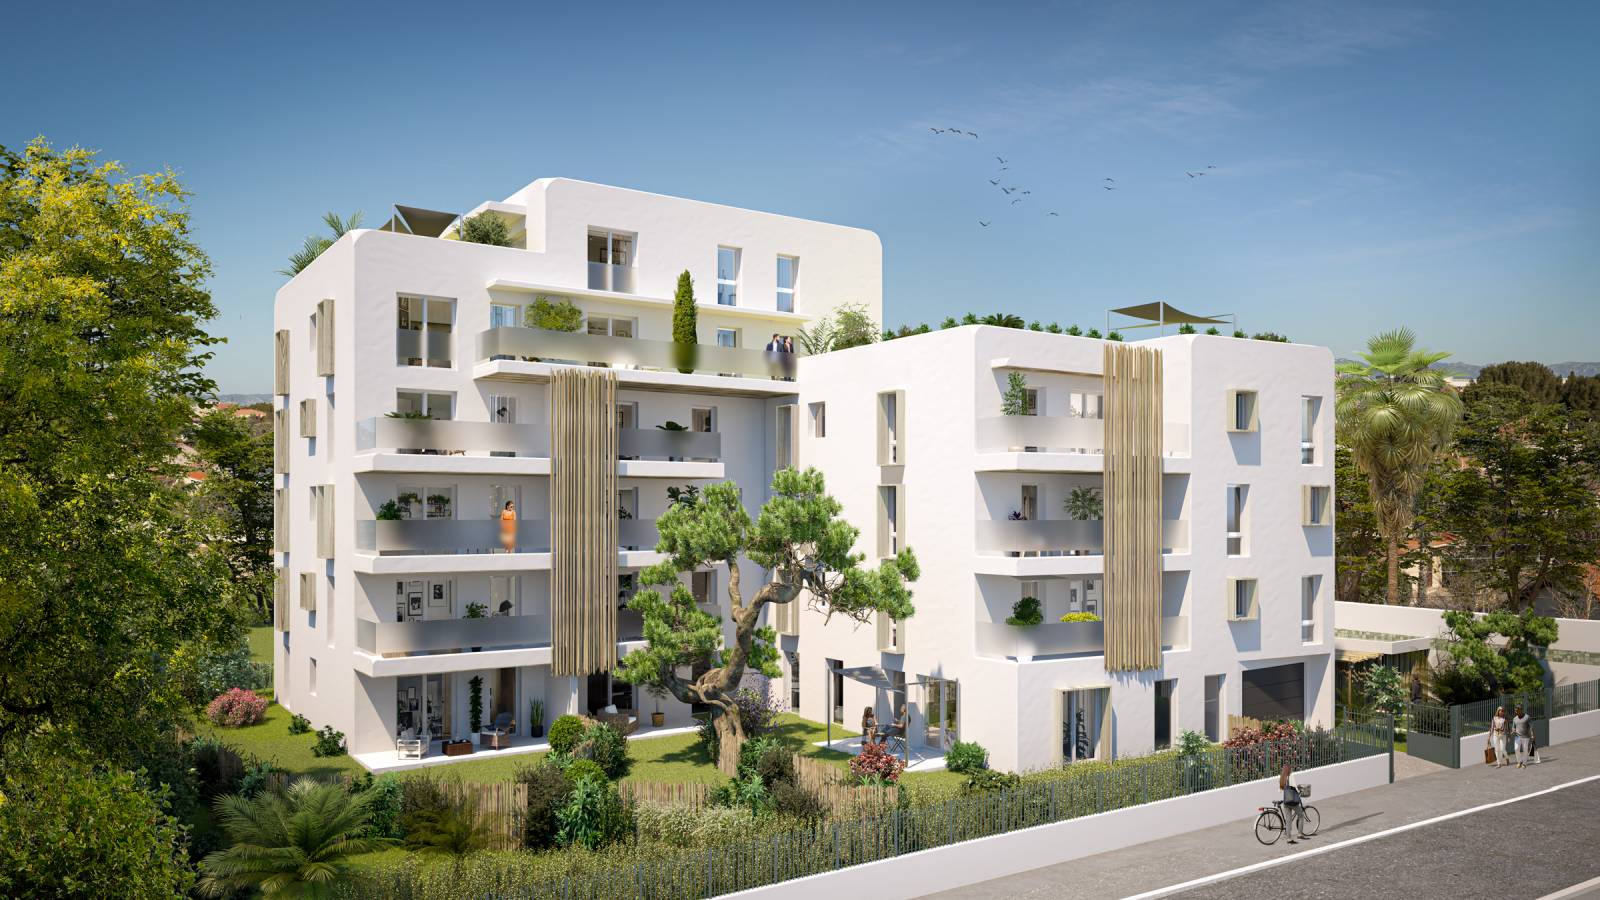 Programme immobilier neuf d'appartements de standing CASA BOHA à Marseille 13008 côté pointe rouge Vieille Chapelle